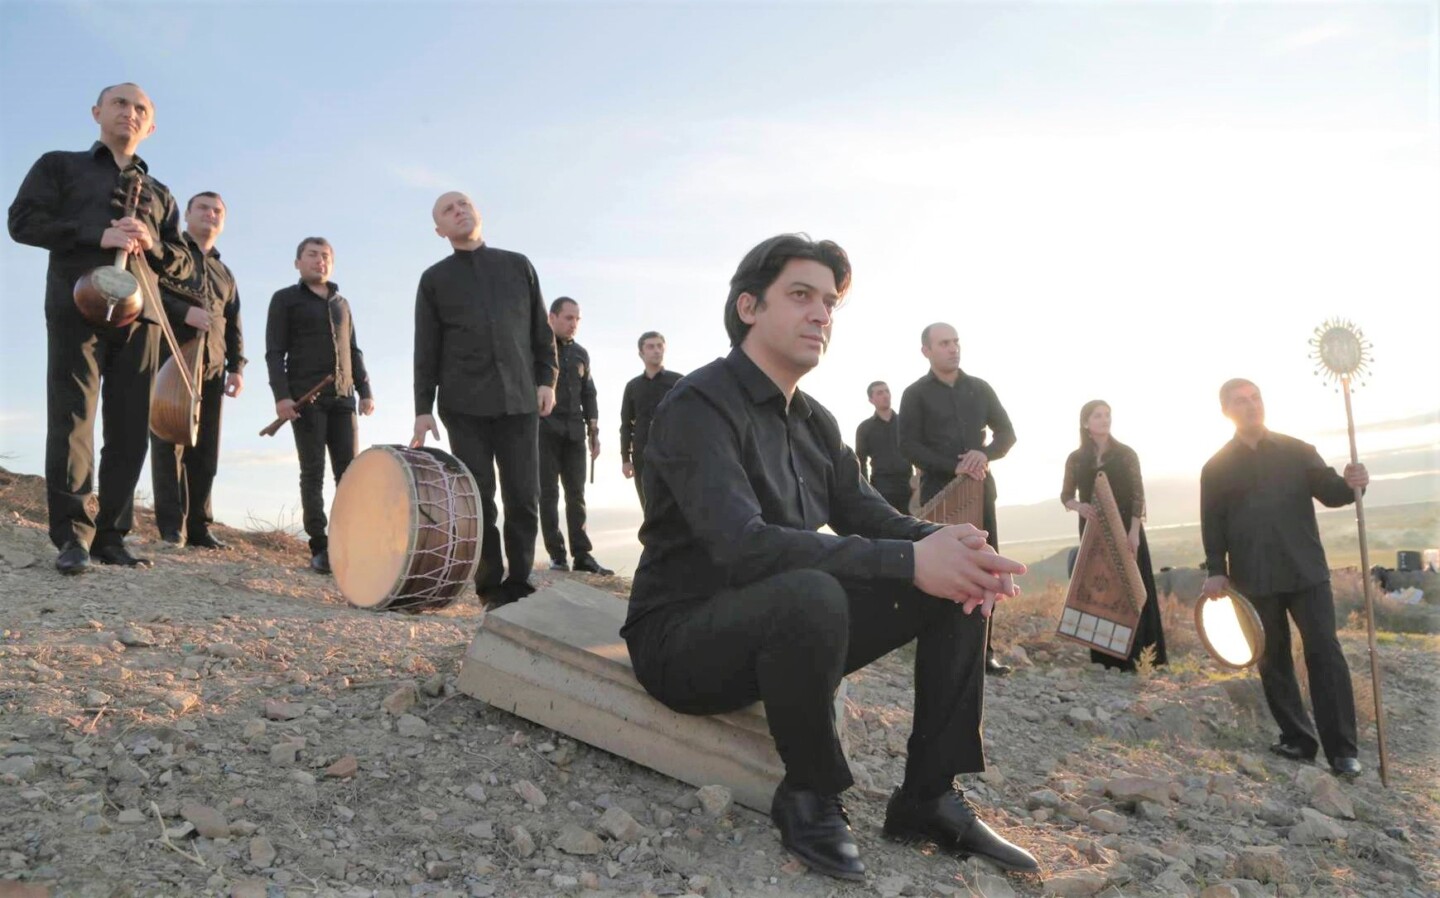 Armeense Gurdjieff Ensemble brengt muzikale ode aan Moeder Aarde